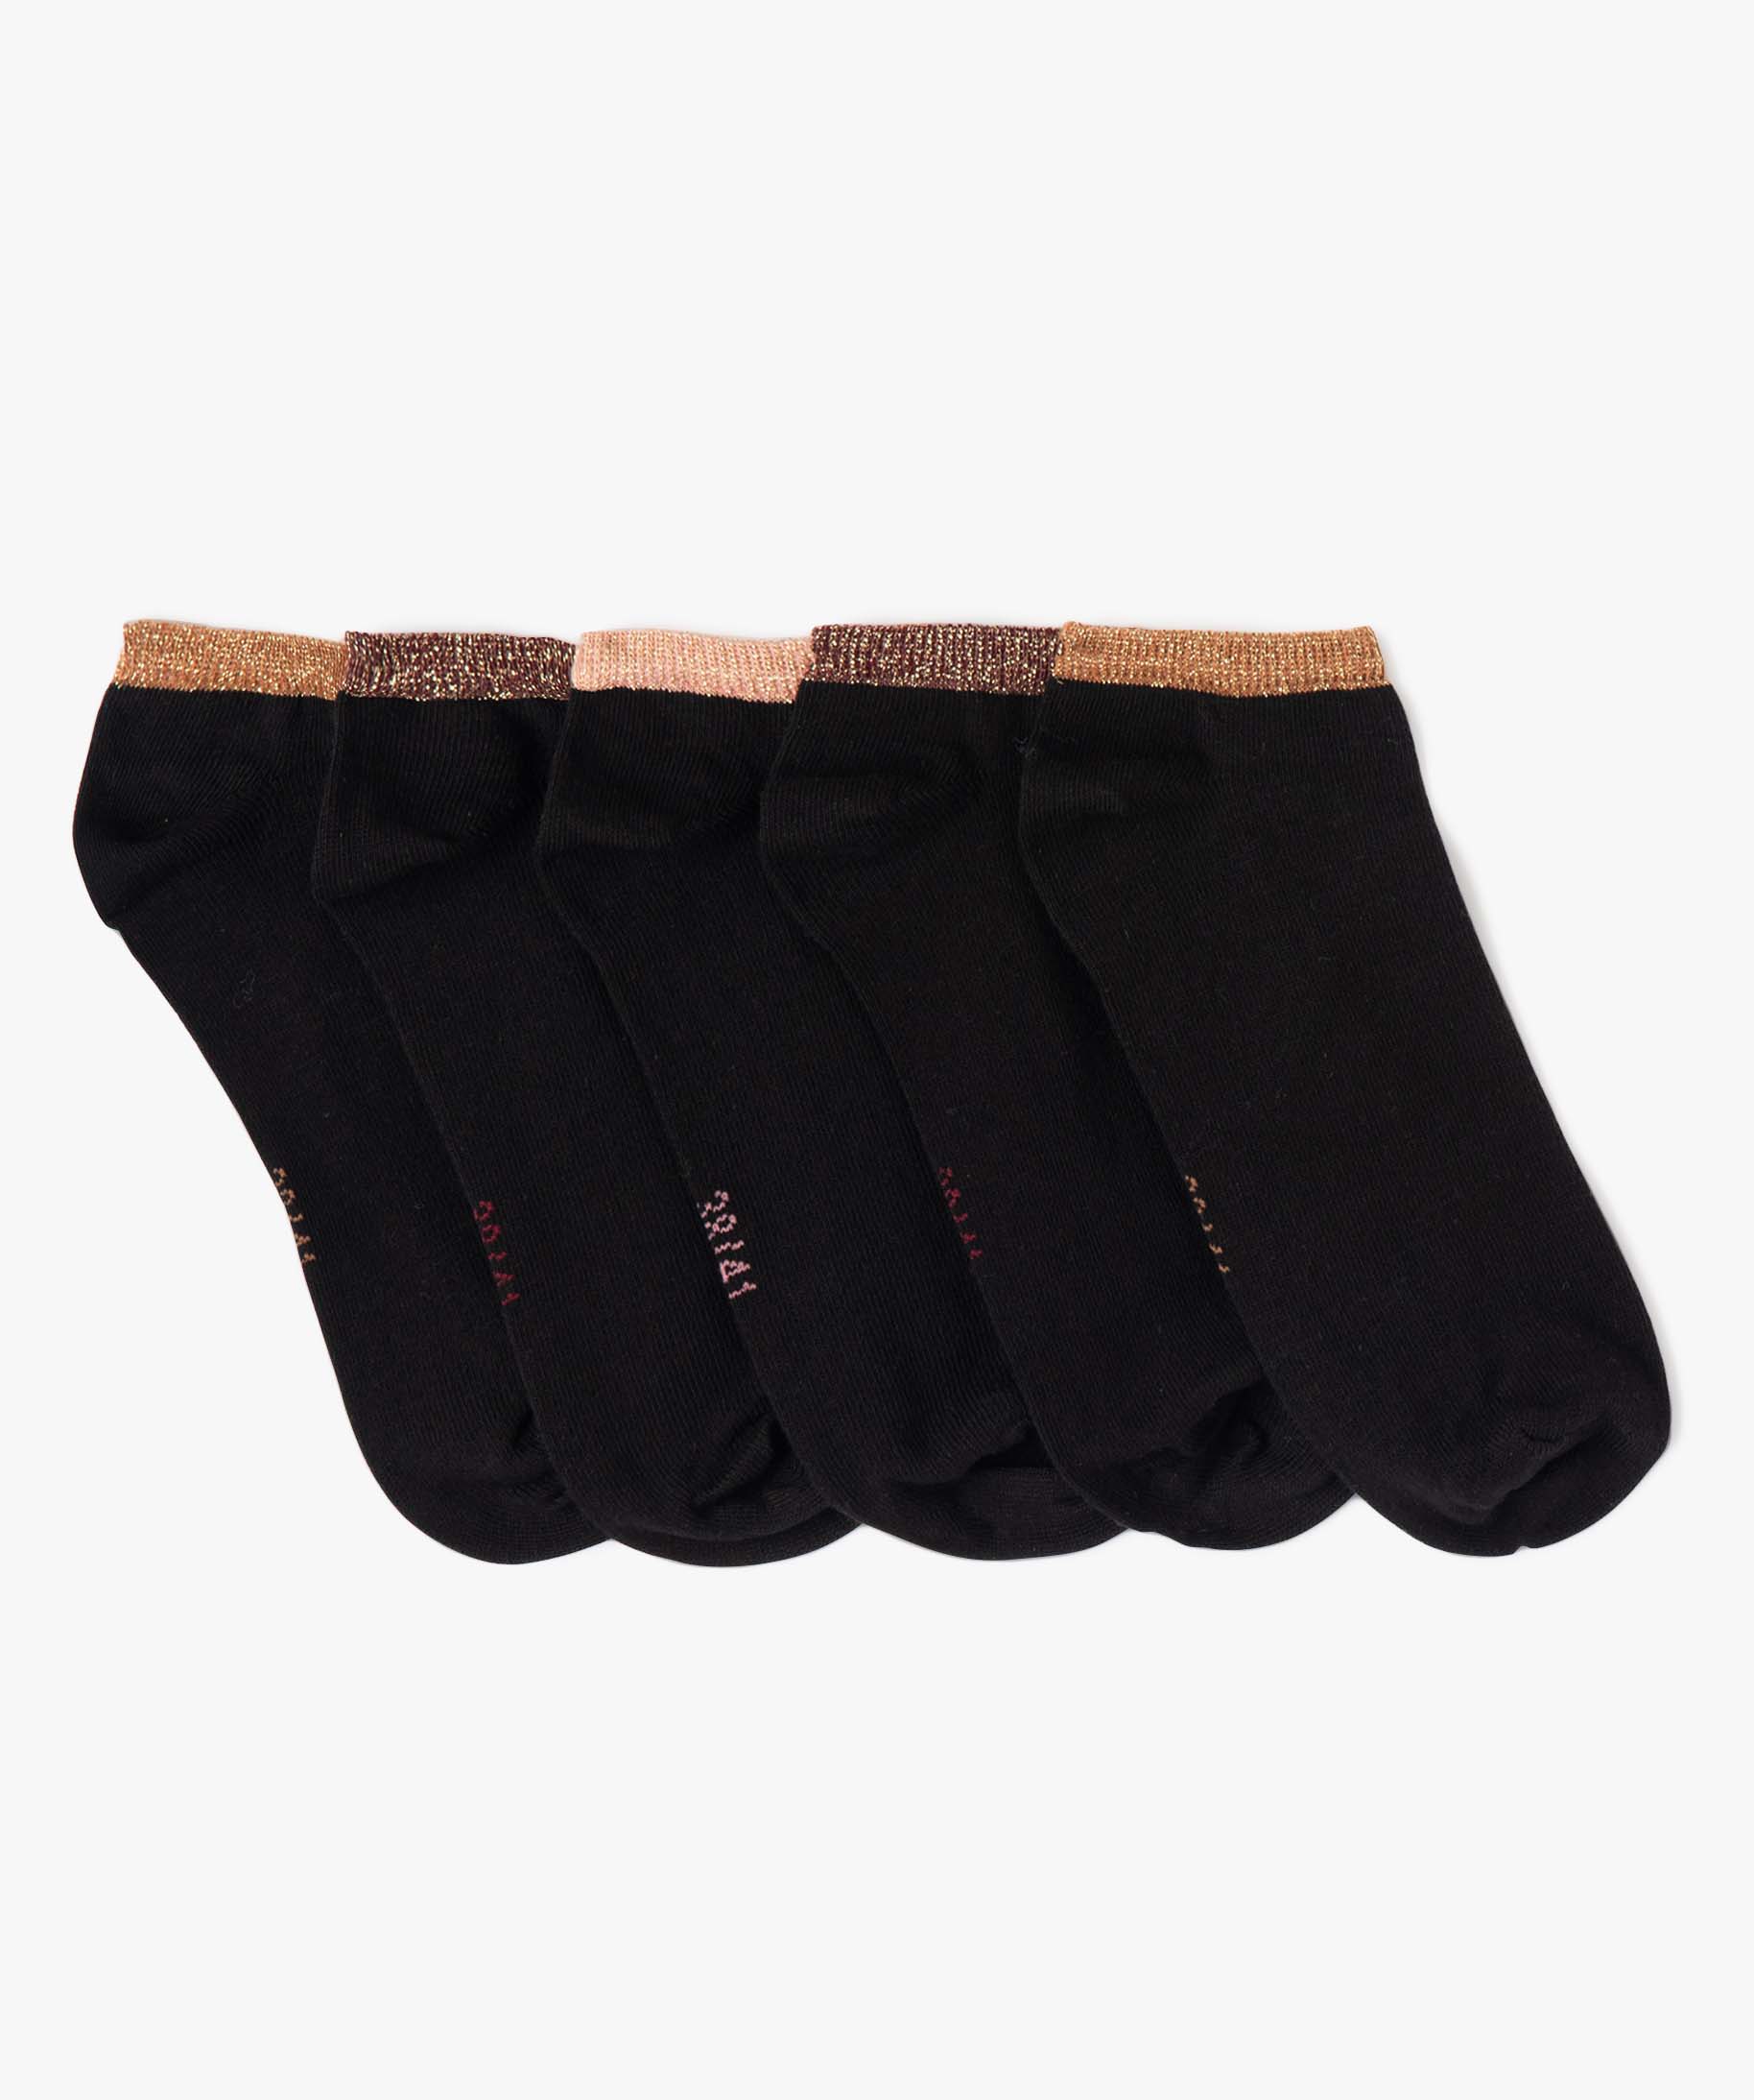 chaussettes femme tige ultra courte avec paillettes (lot de 5) noir  chaussettes